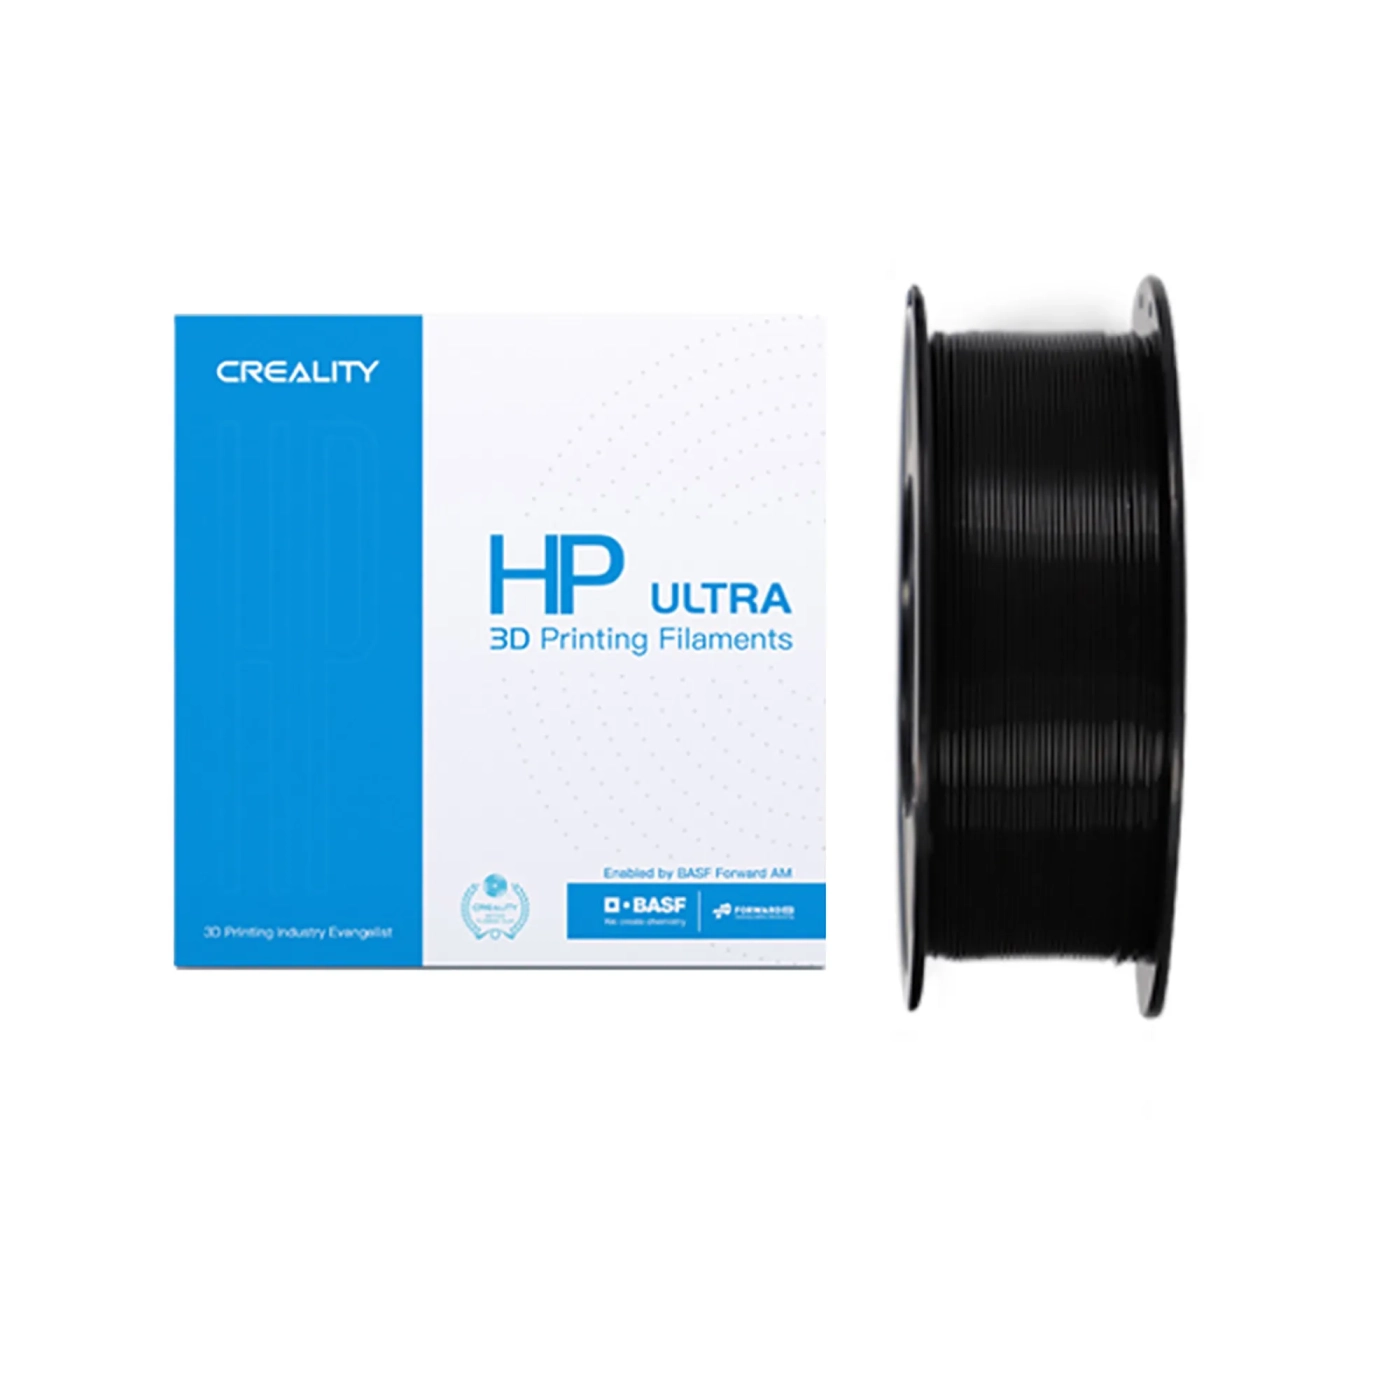 Купить HP ULTRA PLA Filament (пластик) для 3D принтера CREALITY 1кг, 1.75мм, черный - фото 1